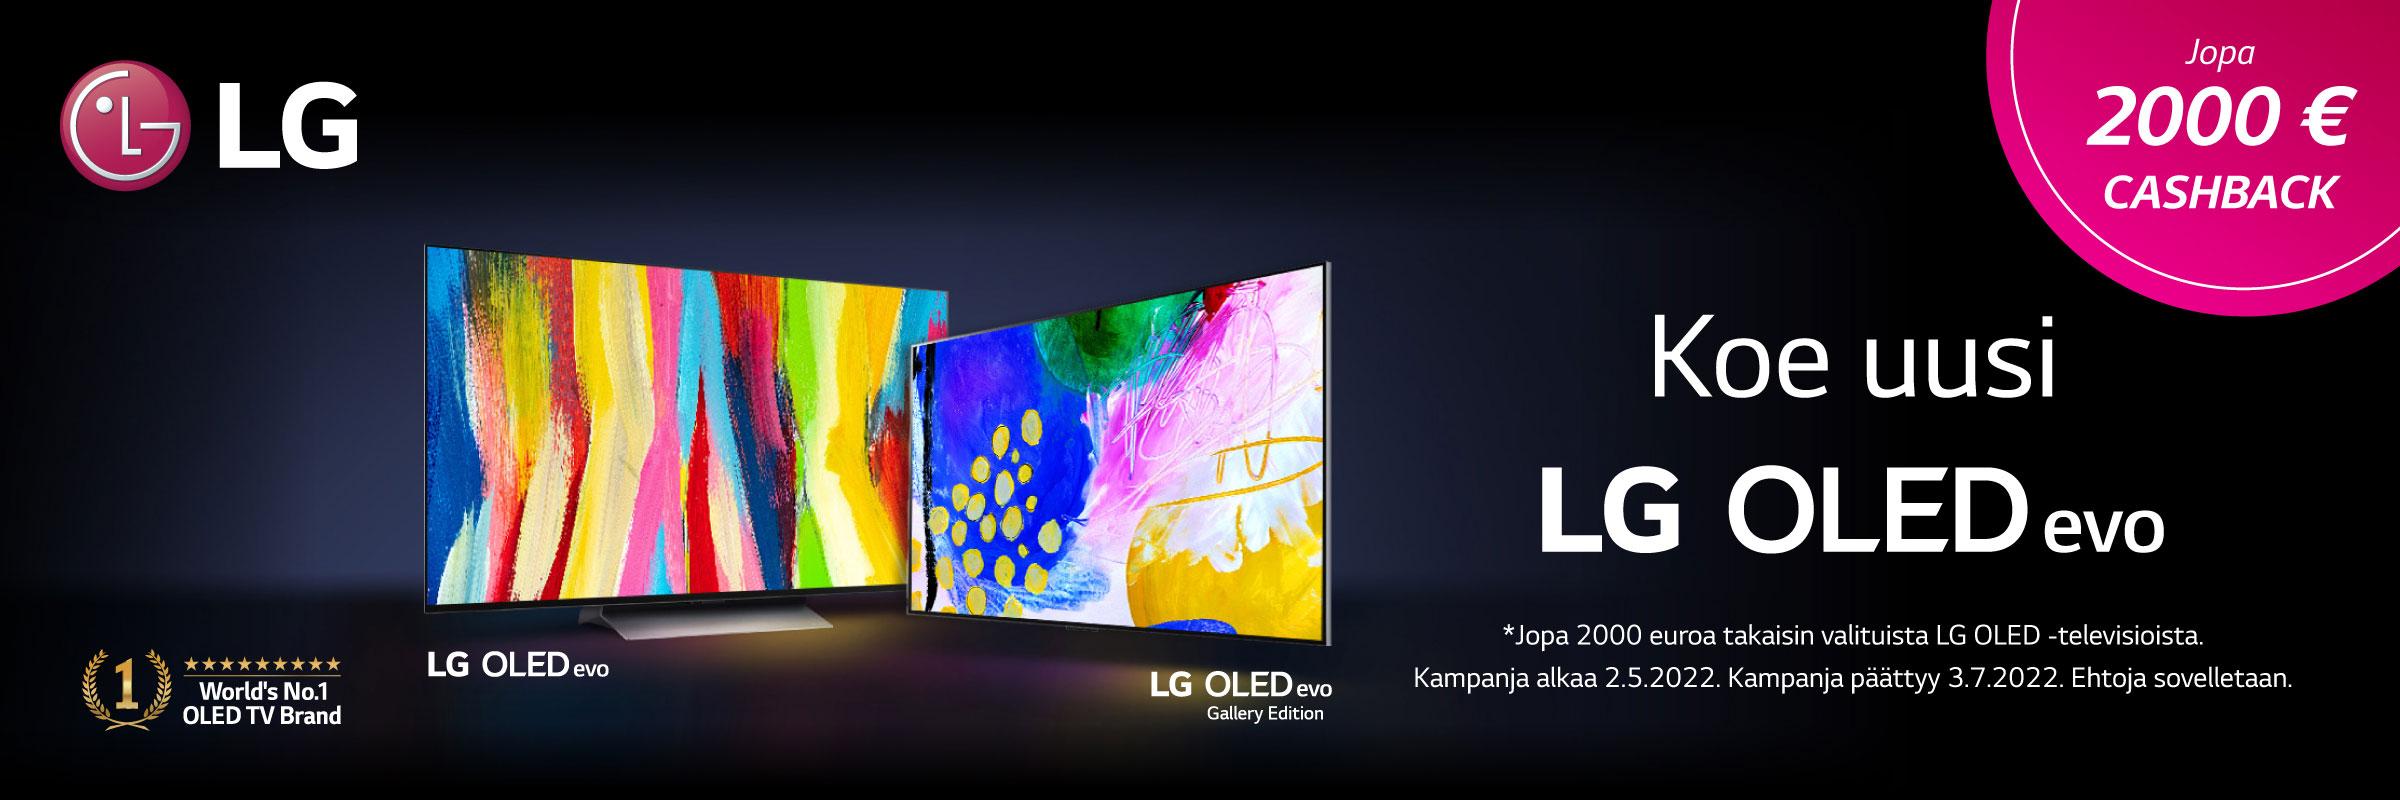 Osta nyt valikoitu LG OLED -televisio, kirjoita arvio niin saat jopa 2000 euroa hyvitystä